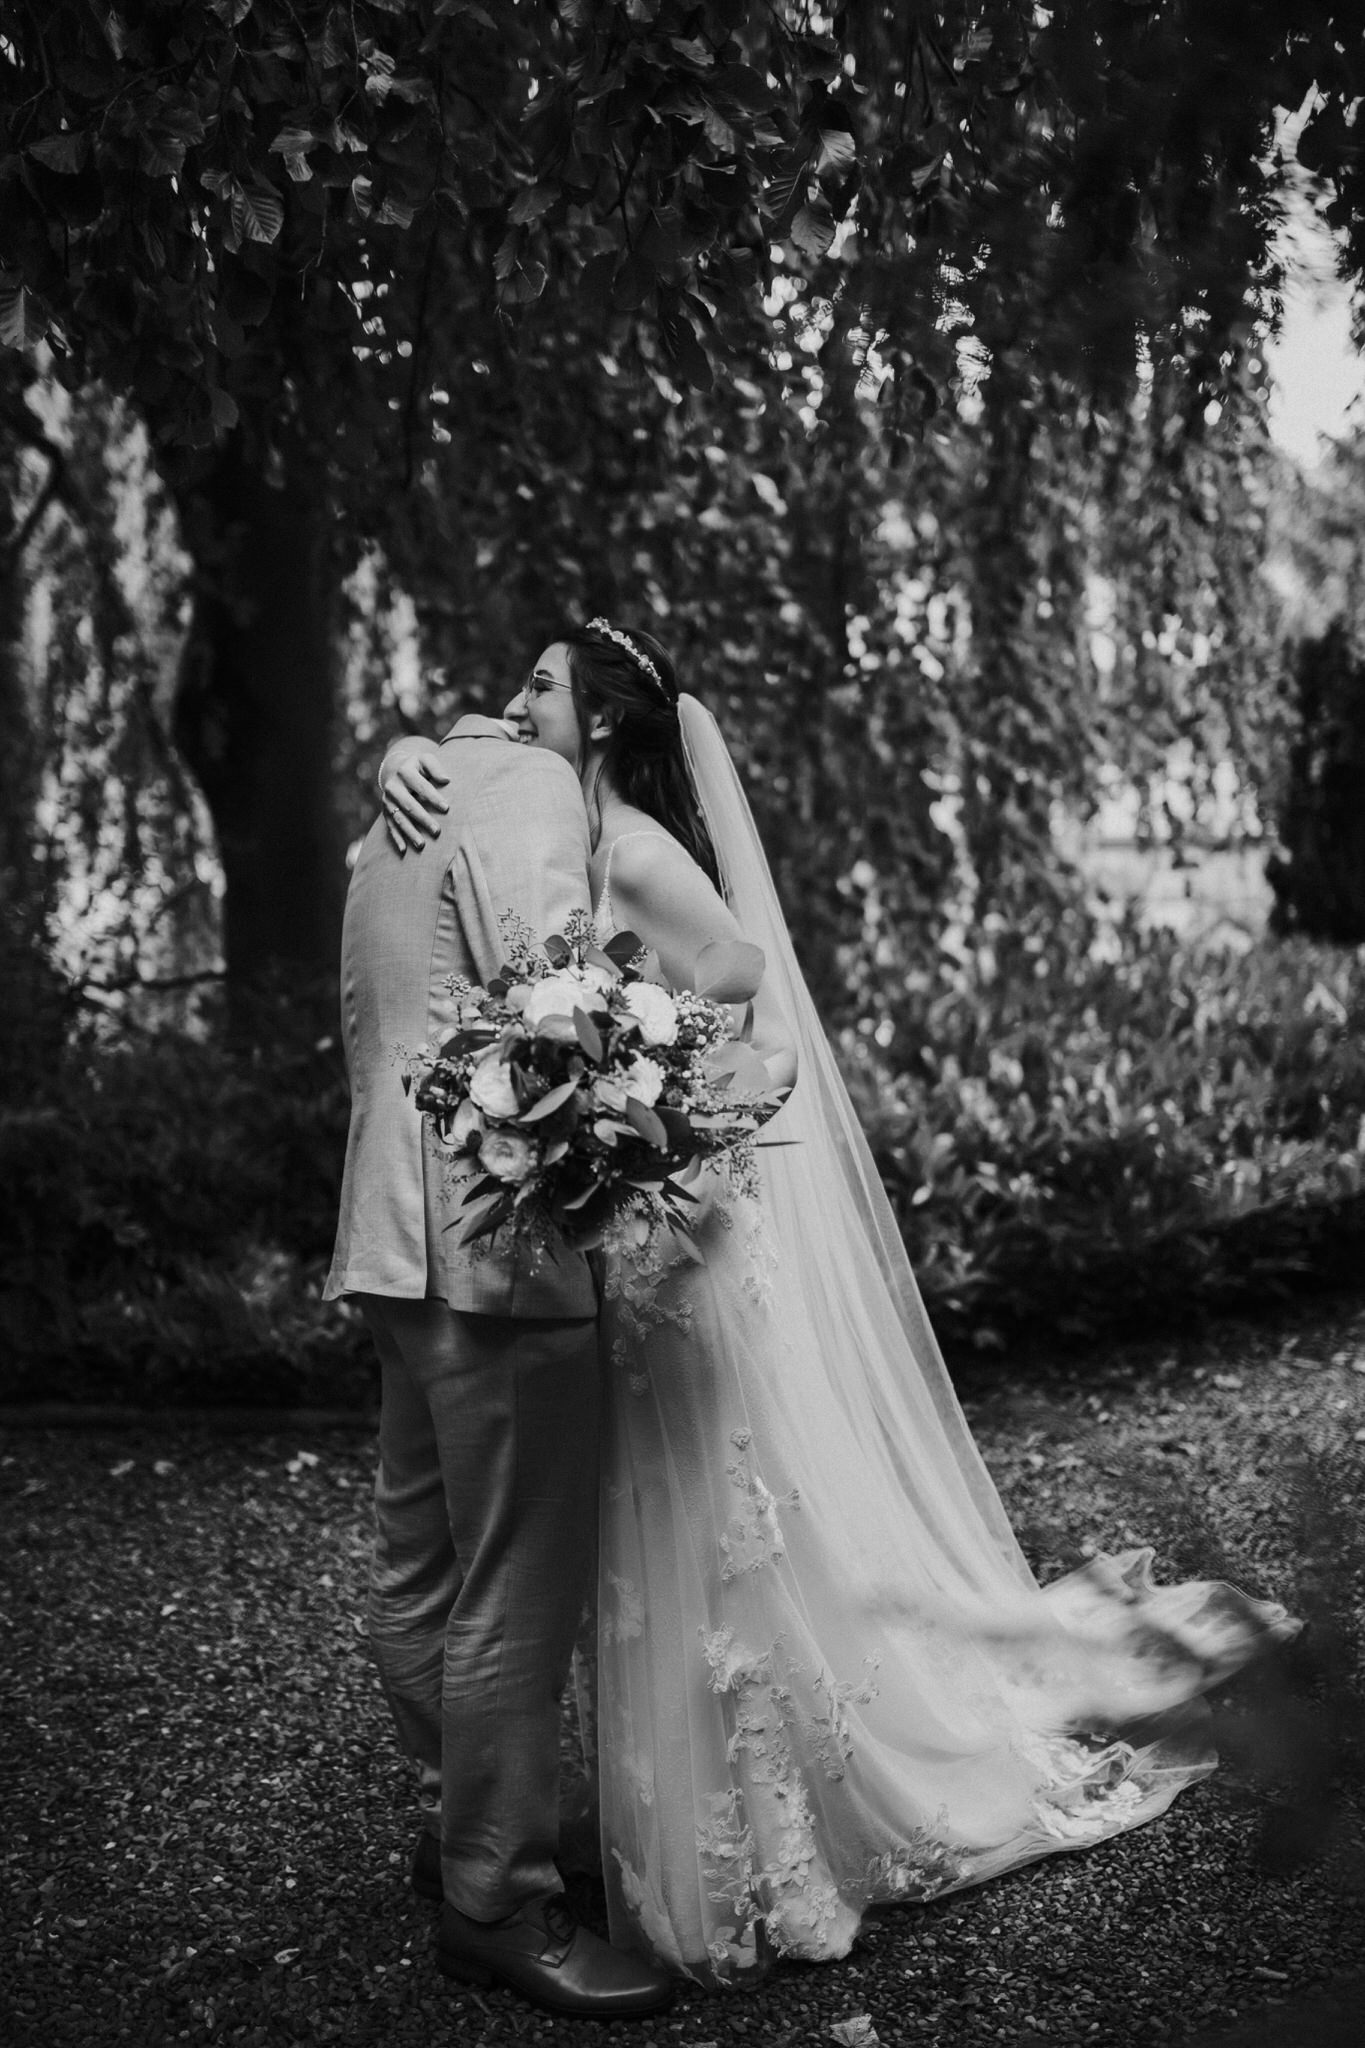 Emotionaler 'First Look' im Garten des Hotel Freigeist in Northeim – Ein magischer Moment, als Braut und Bräutigam sich das erste Mal sehen und die Vorfreude auf den großen Tag im grünen Ambiente spüren.